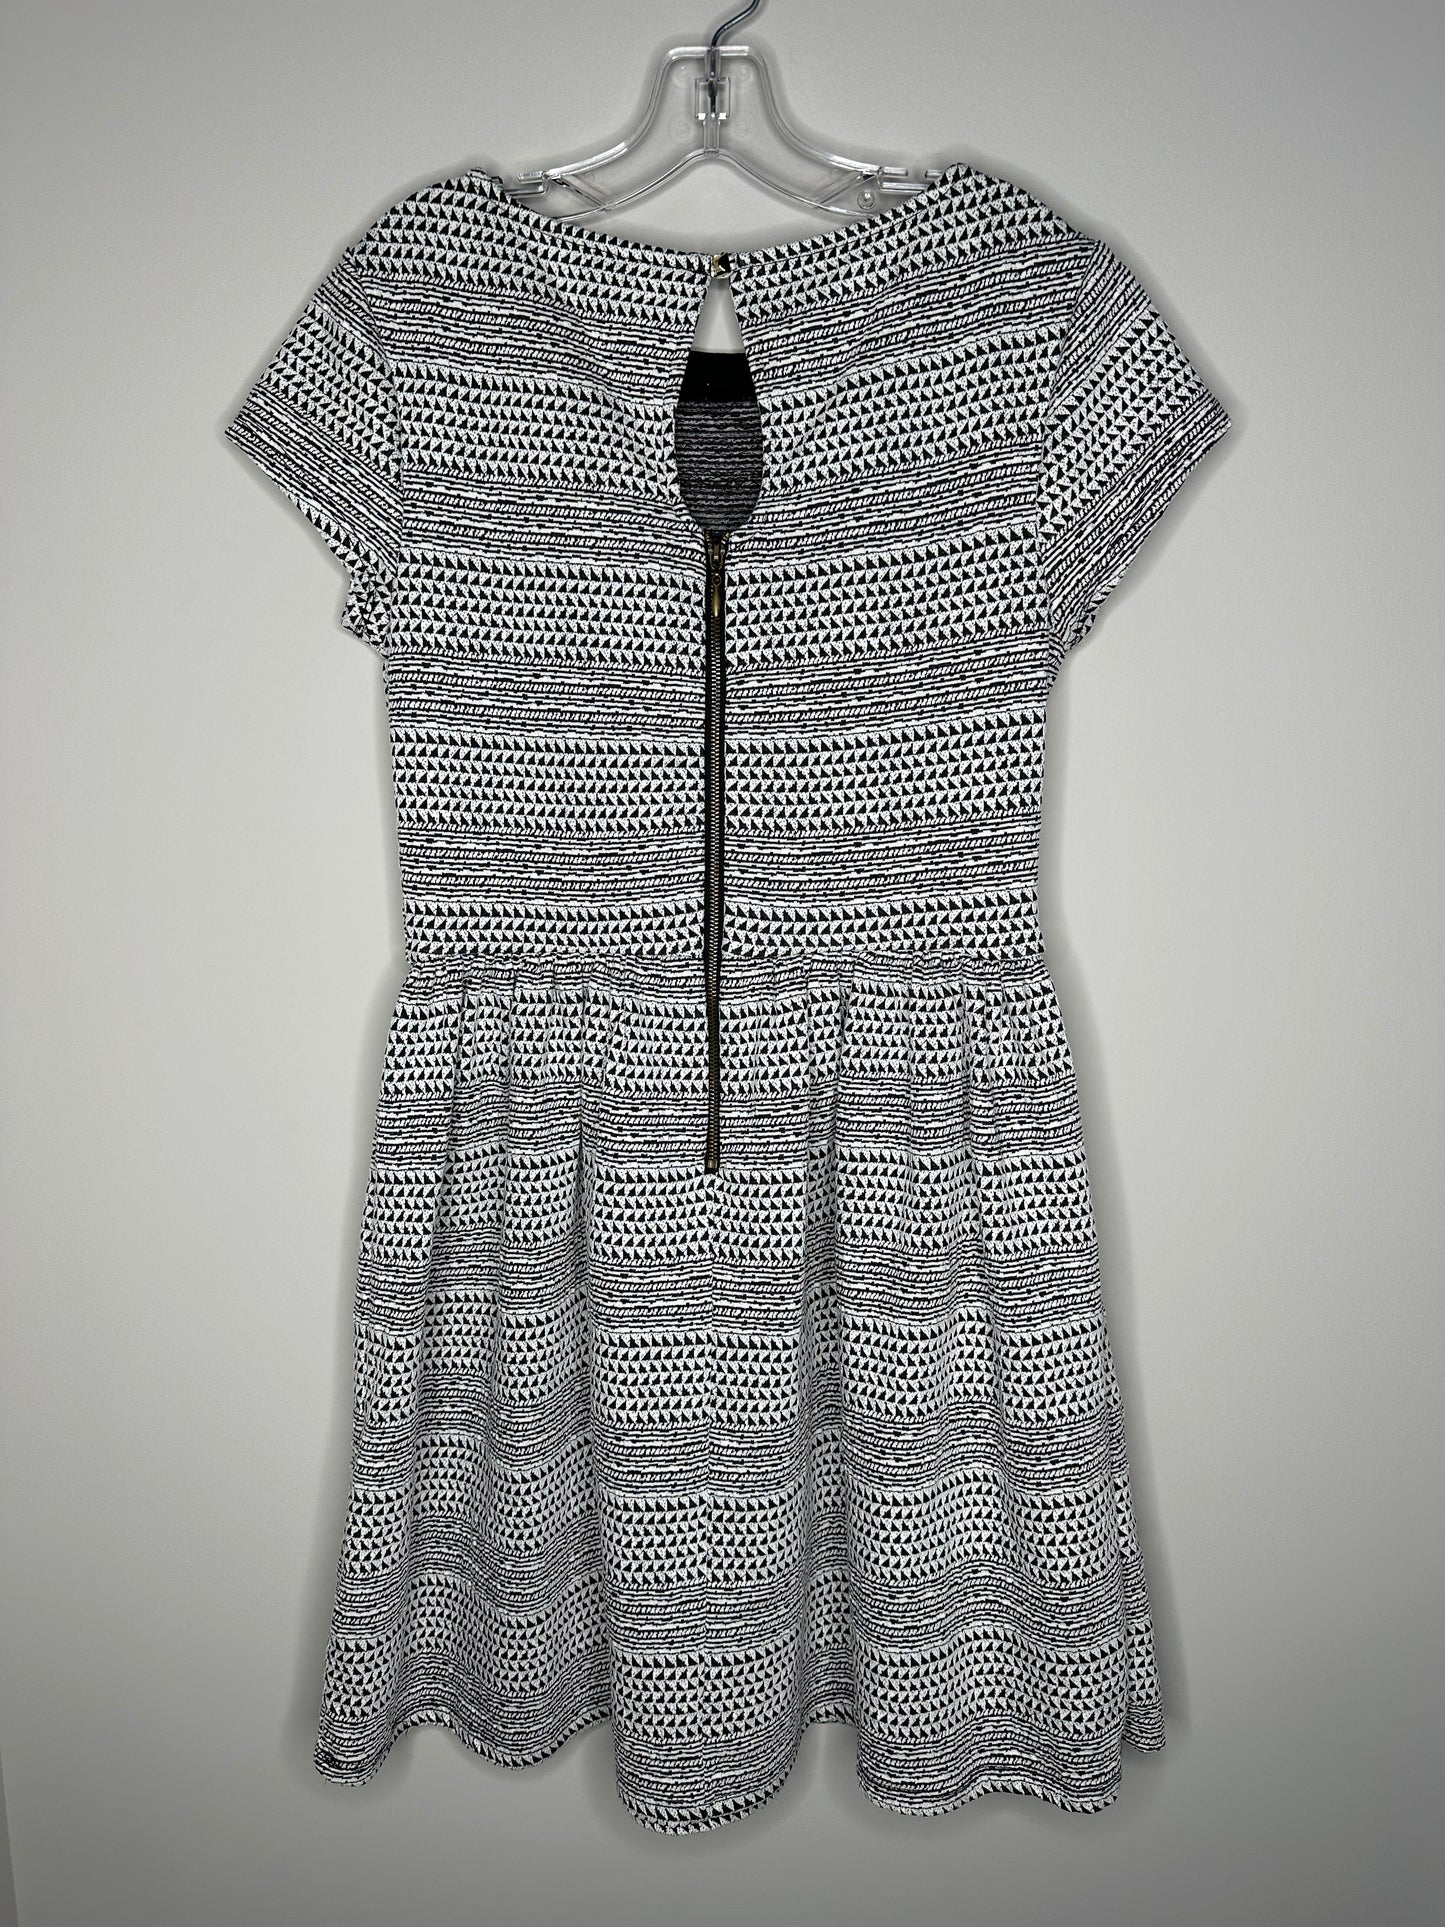 Xhilaration Size S Black & White Geometric Short Sleeve Tunic Dress, EUC